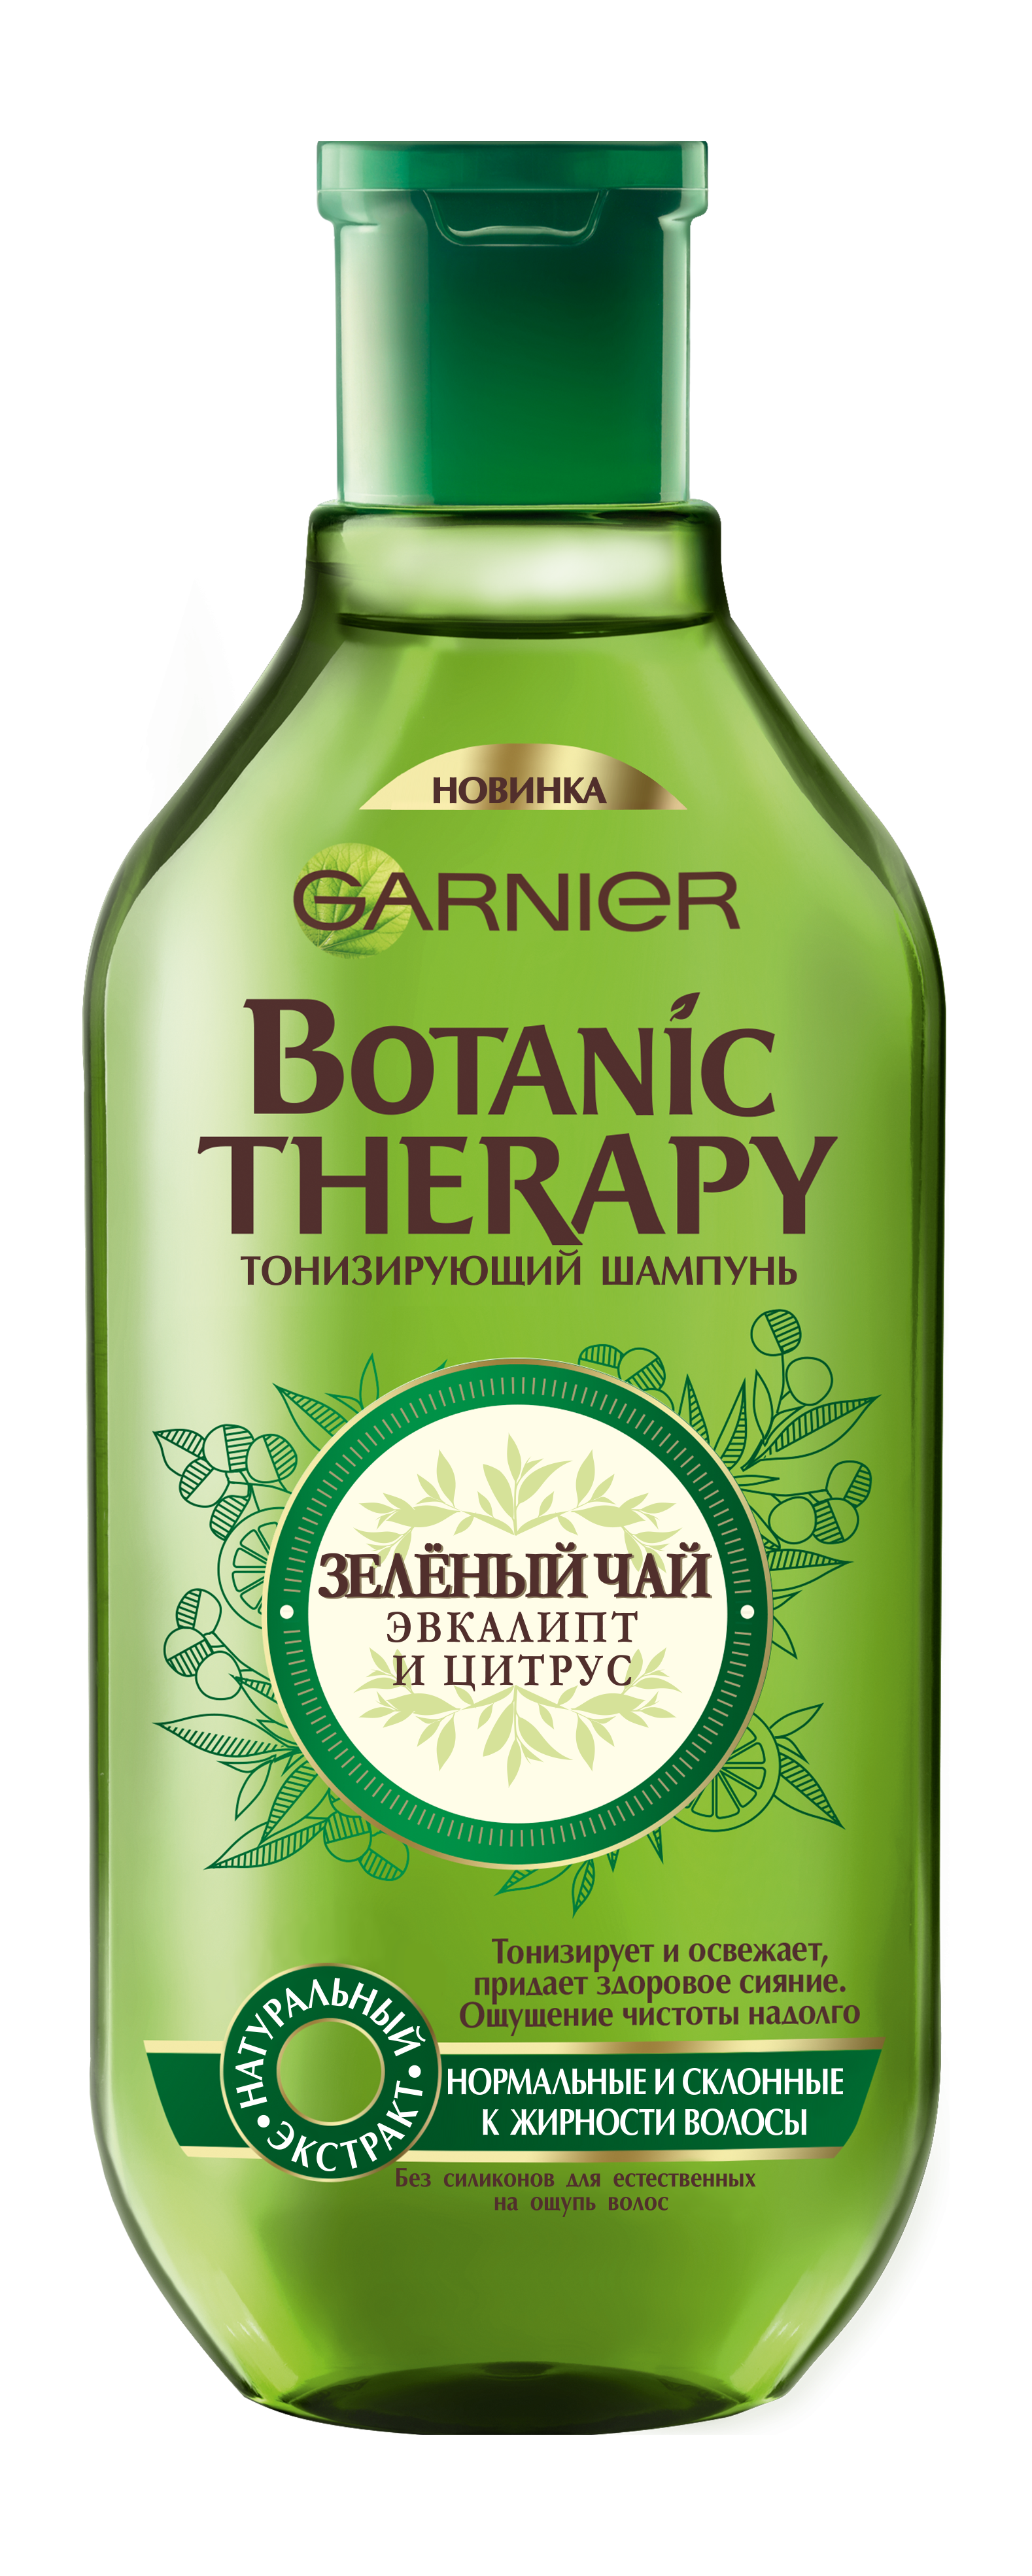 Шампунь Garnier Botanic Therapy Зеленый чай, эвкалипт и цитрус, для нормальных и склонных к жирности волос, 250 мл - фото 1